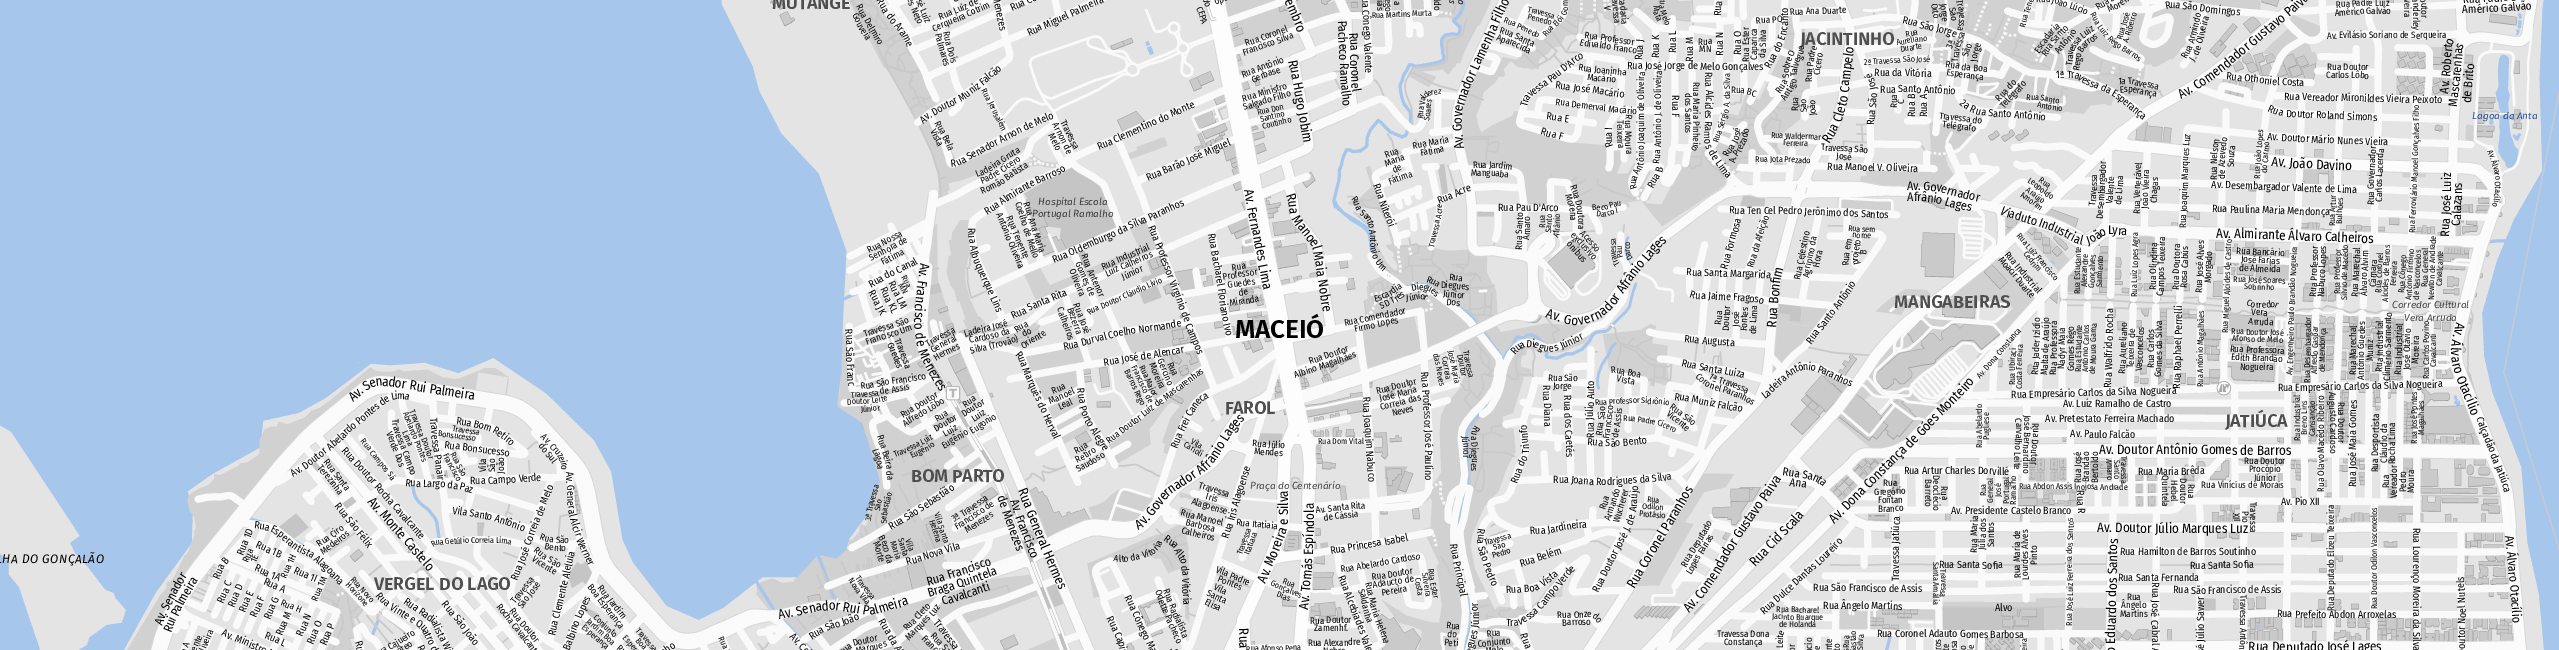 Stadtplan Maceió zum Downloaden.